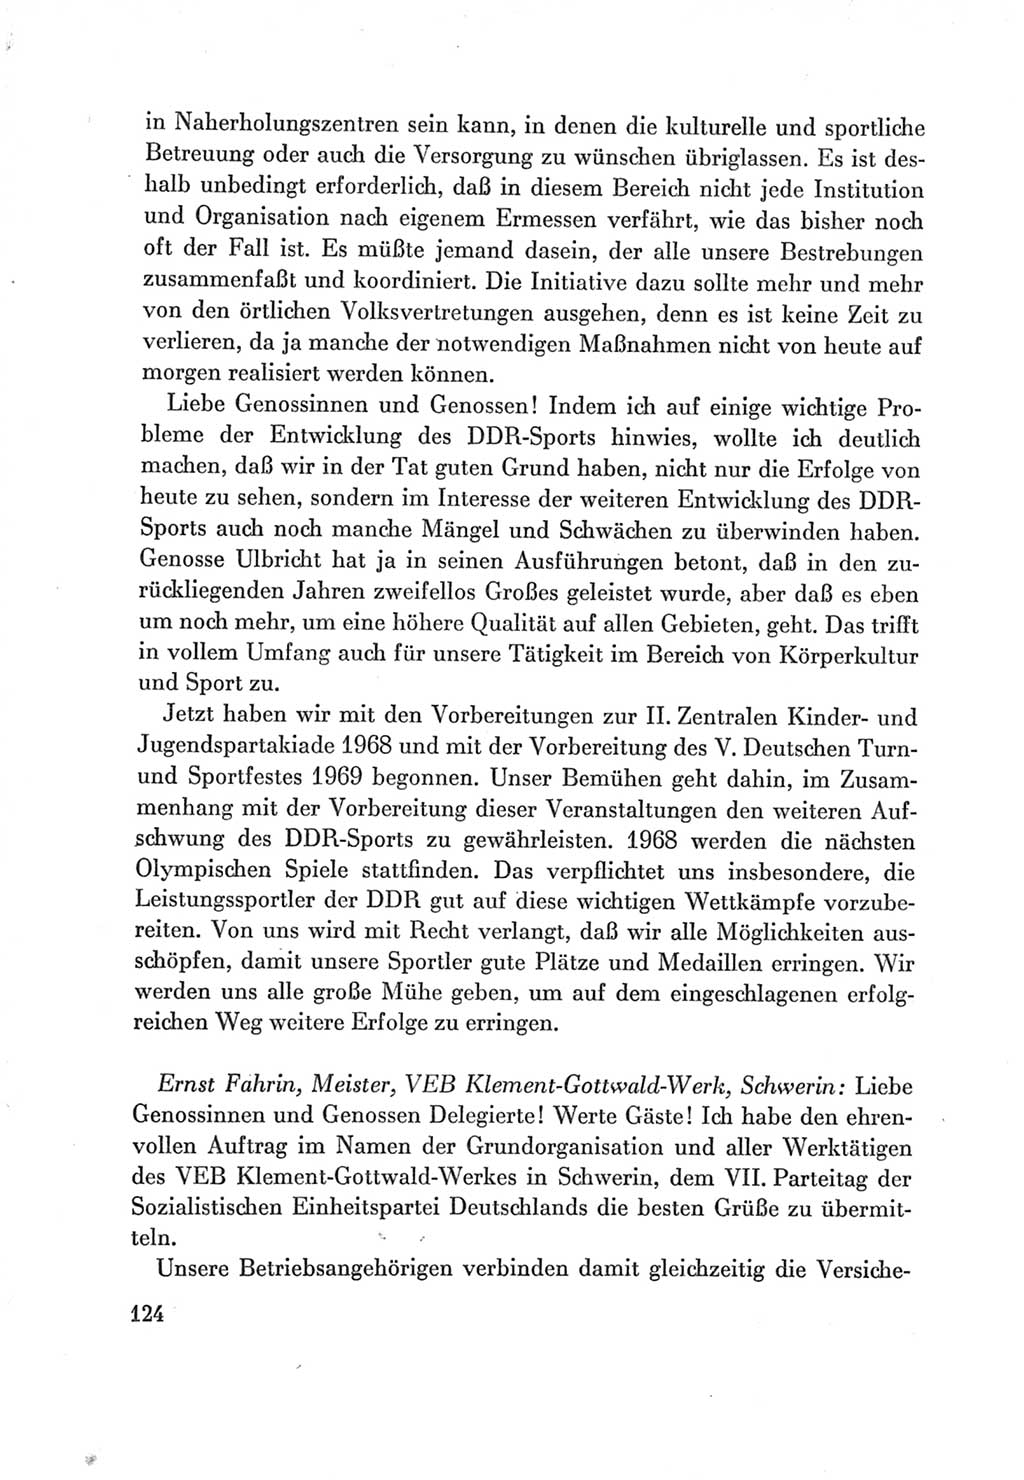 Protokoll der Verhandlungen des Ⅶ. Parteitages der Sozialistischen Einheitspartei Deutschlands (SED) [Deutsche Demokratische Republik (DDR)] 1967, Band Ⅲ, Seite 124 (Prot. Verh. Ⅶ. PT SED DDR 1967, Bd. Ⅲ, S. 124)